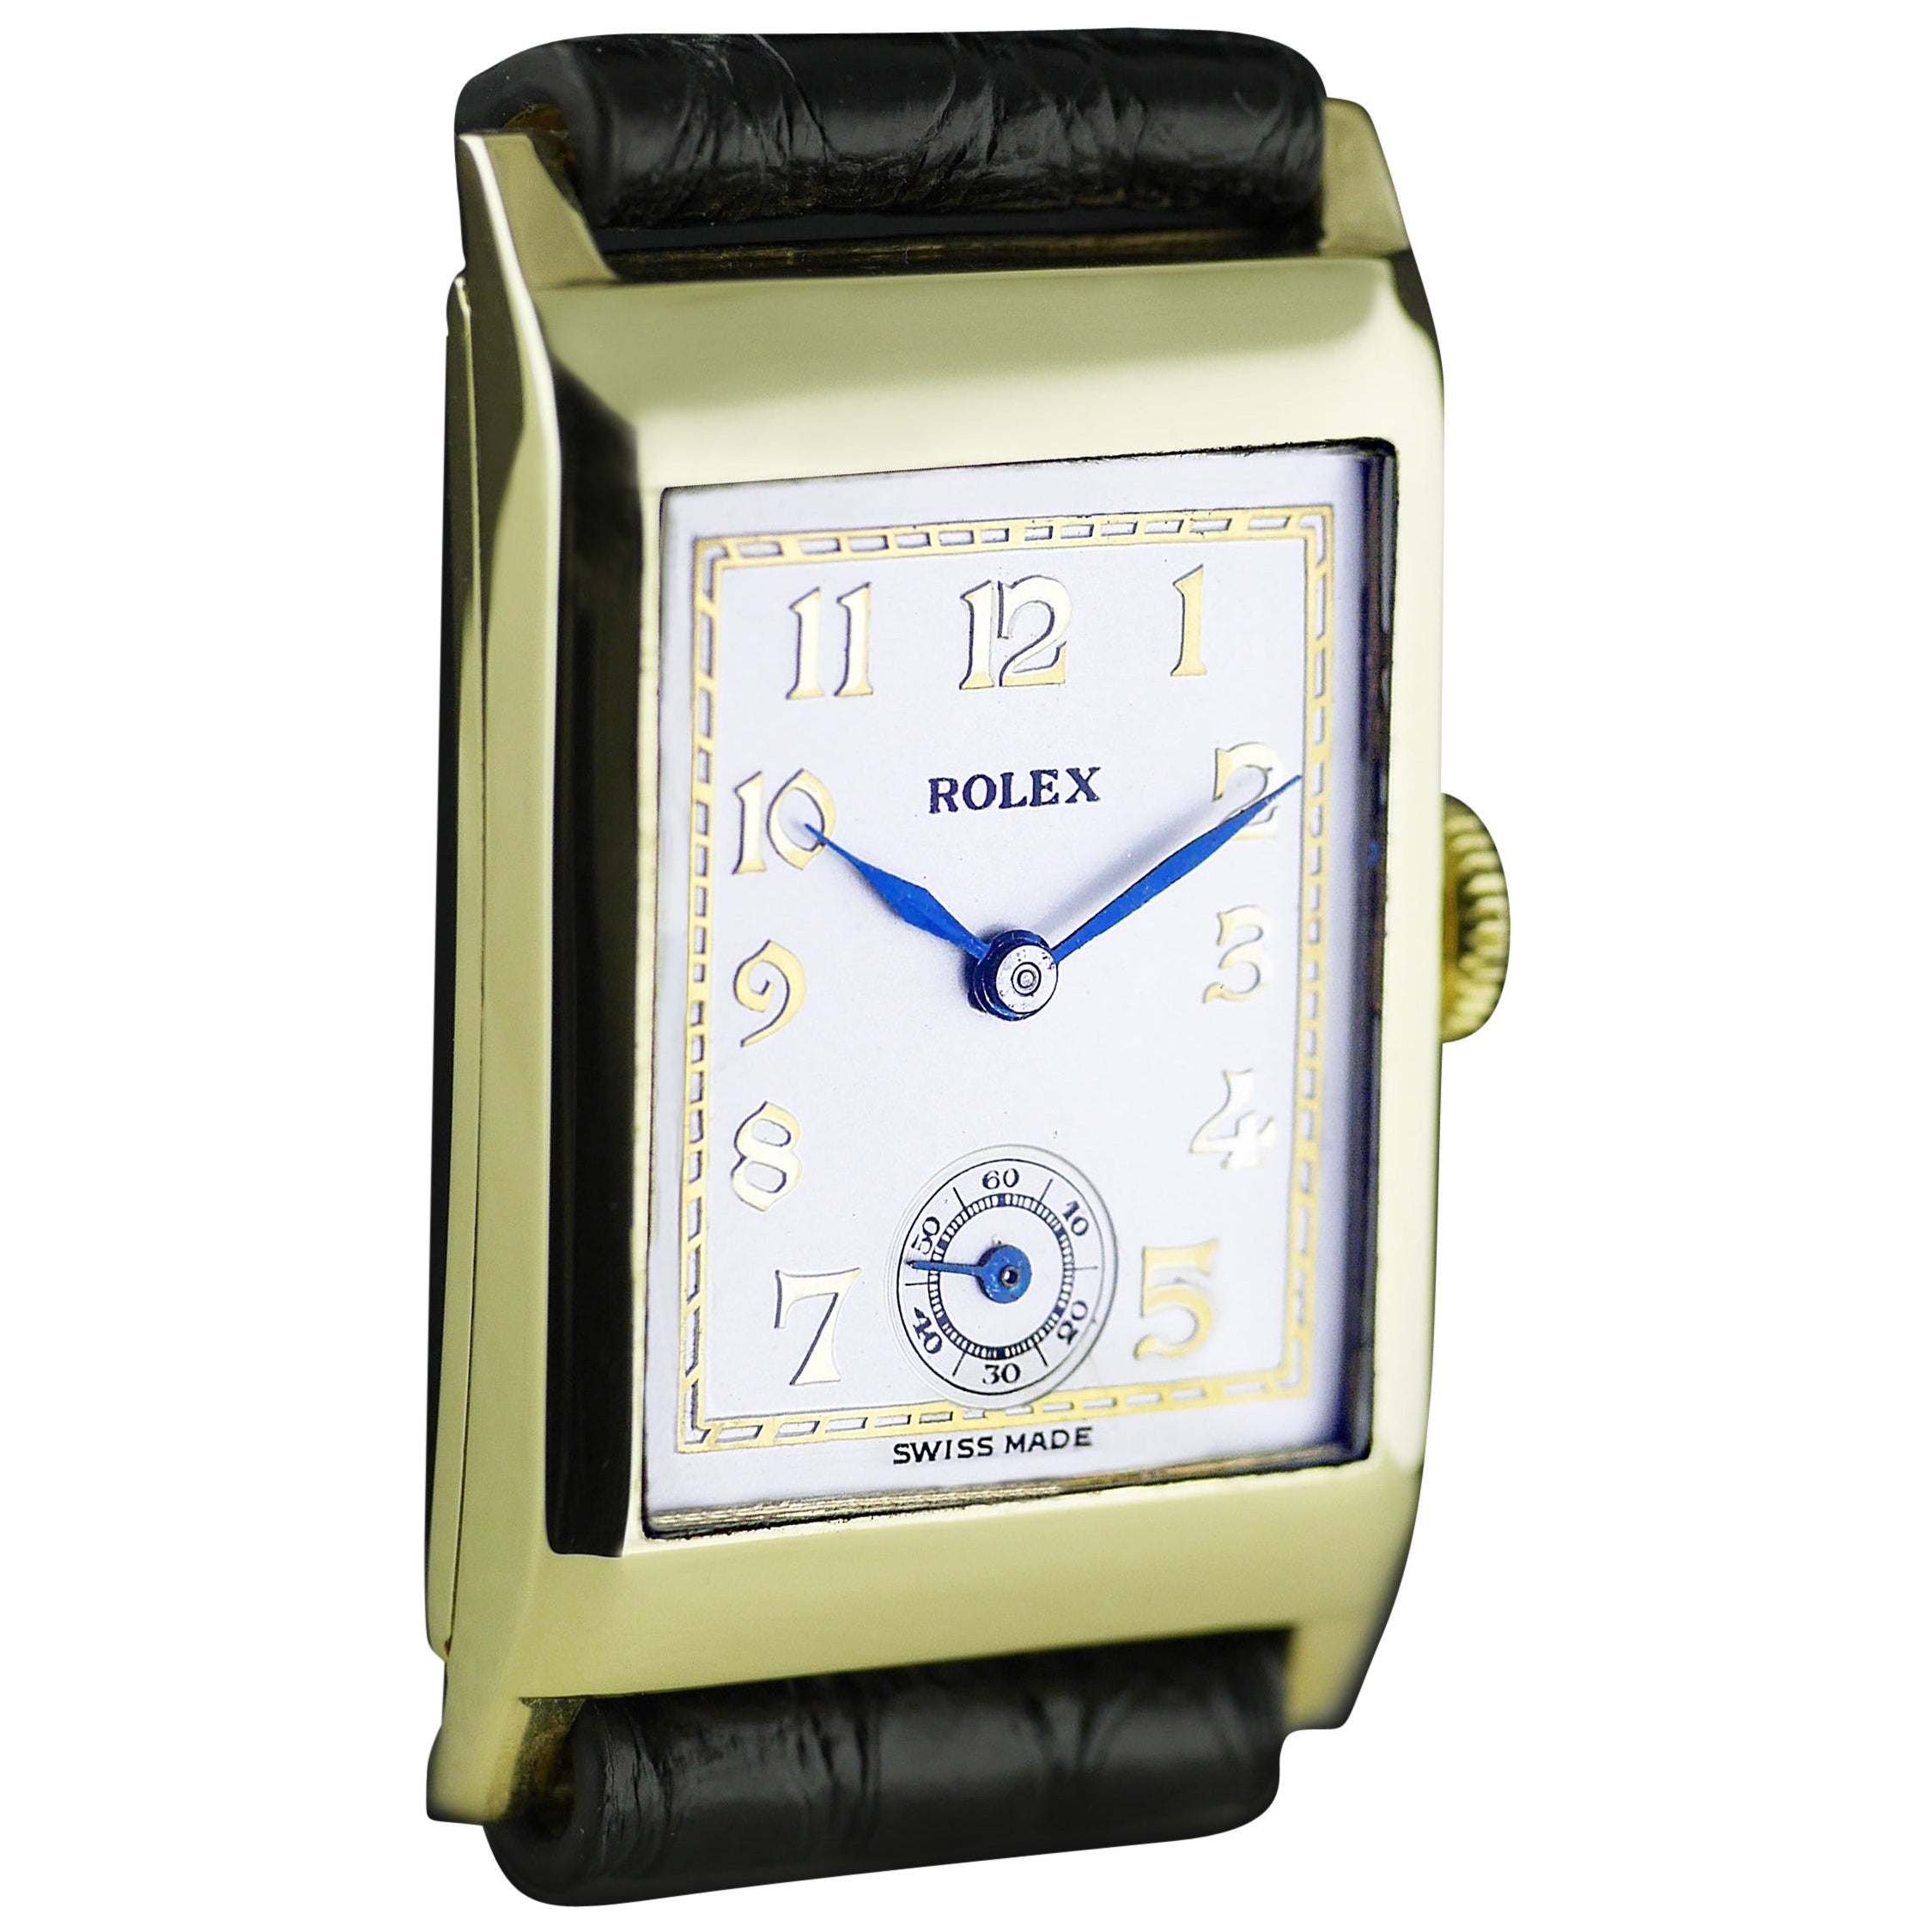 Une montre-bracelet Art of Vintage de Rolex datée de 1938.

Boîtier en or jaune 9ct marqué Rolex et 